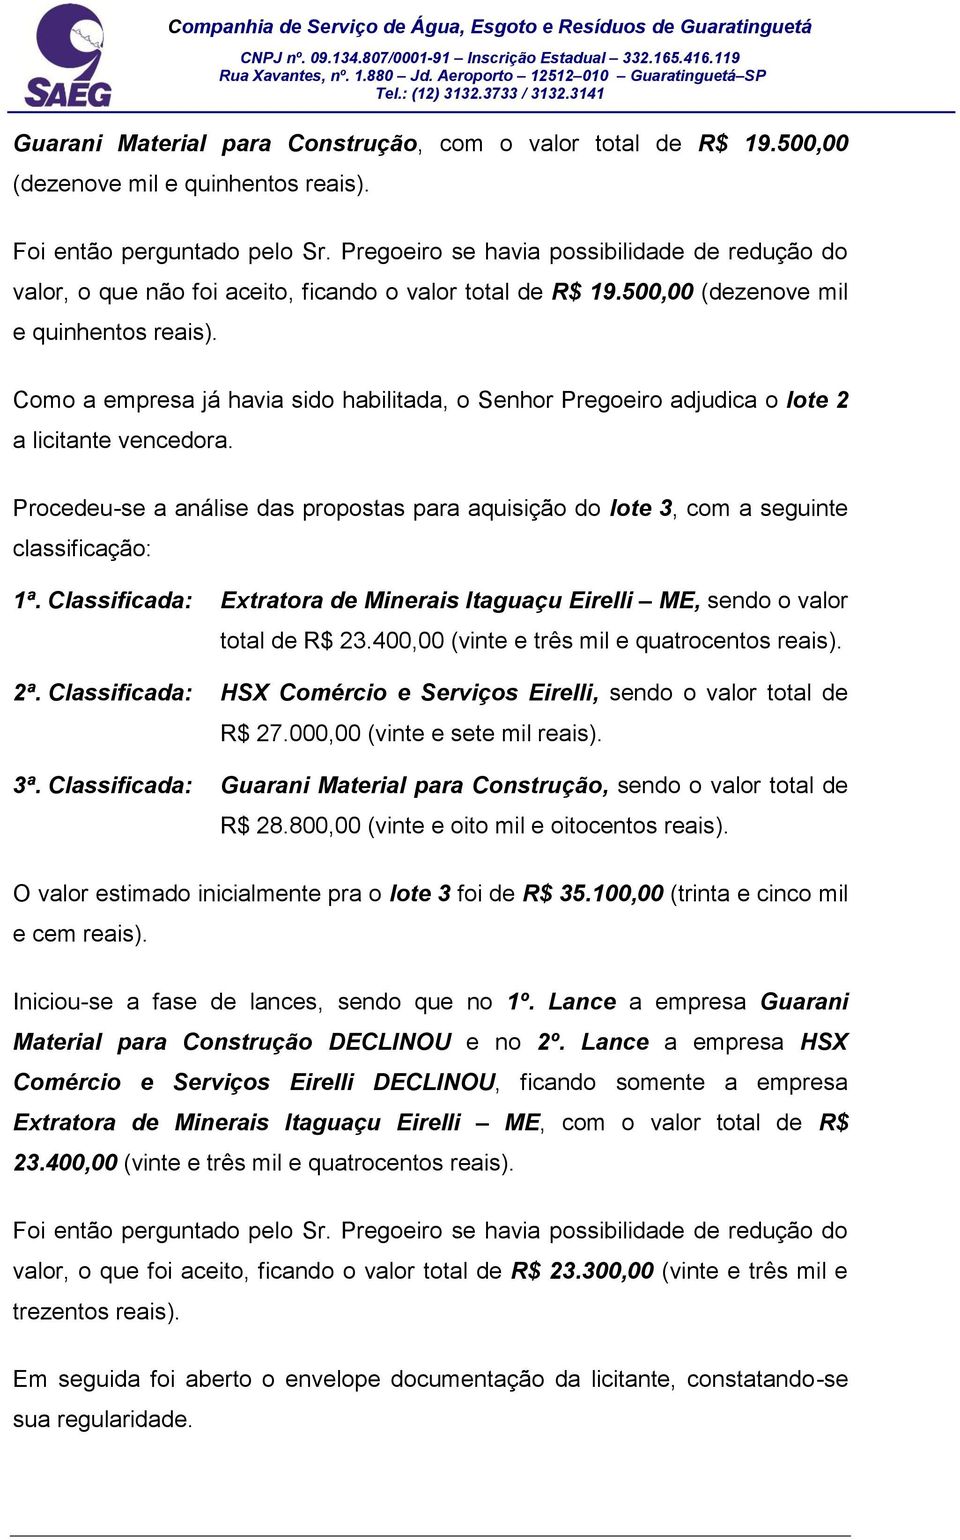 Procedeu-se a análise das propostas para aquisição do lote 3, com a seguinte 1ª. Classificada: Extratora de Minerais Itaguaçu Eirelli ME, sendo o valor total de R$ 23.